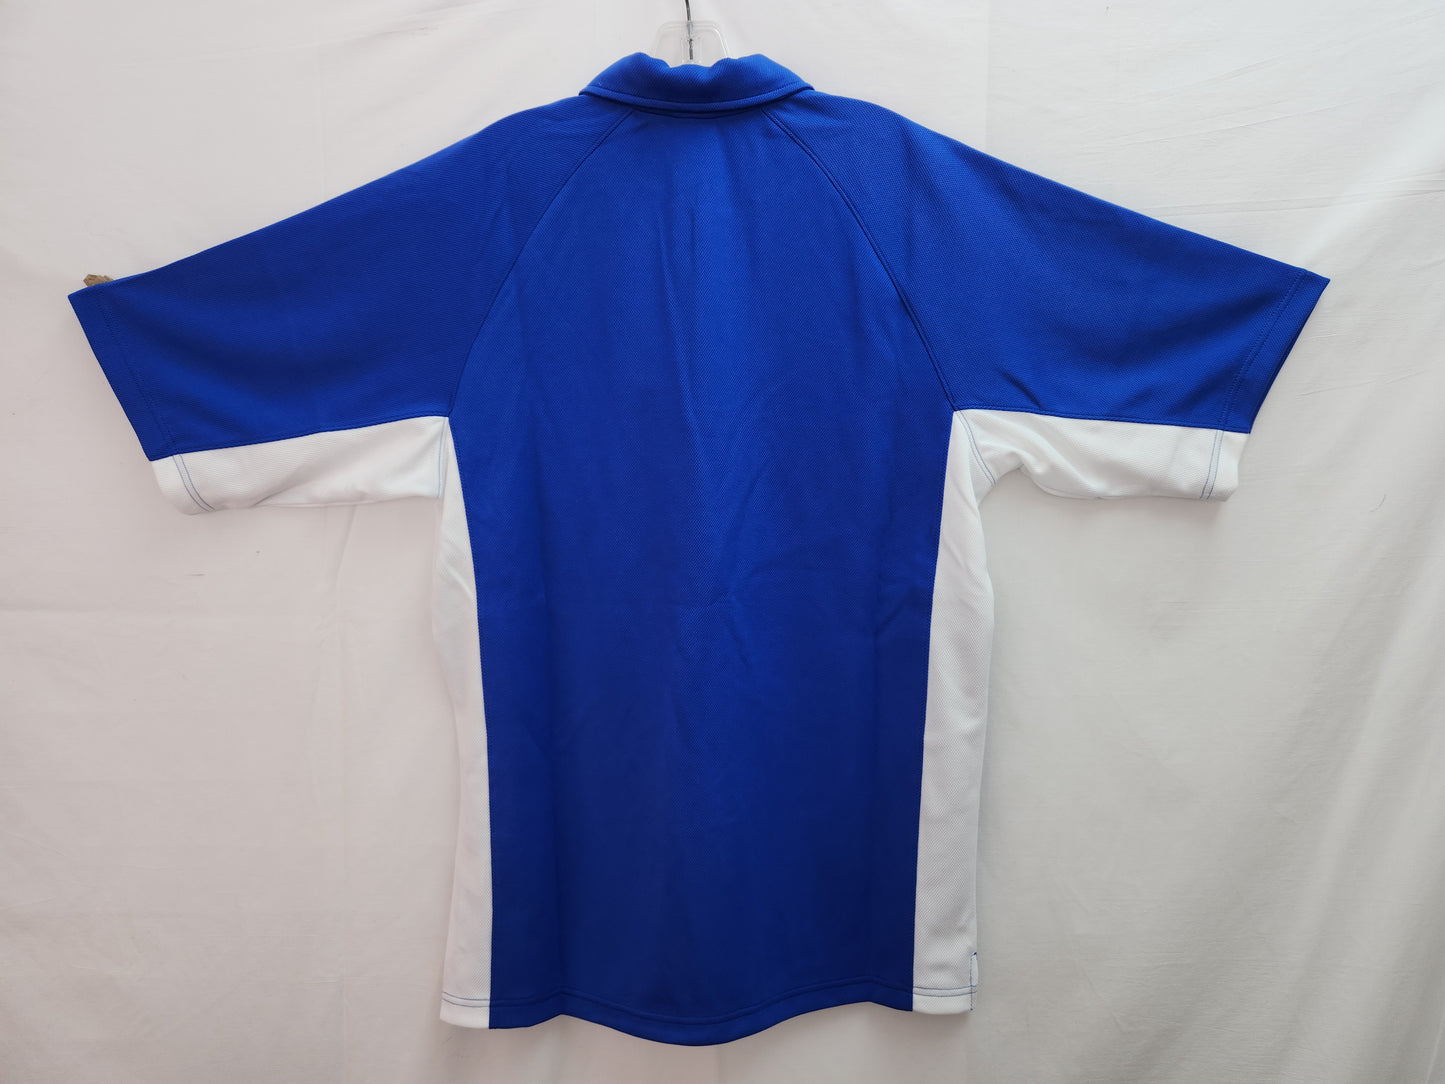 NWT - Nike Team Royal Blue/White Waffle Knit Dri-Fit Polo Shirt - M